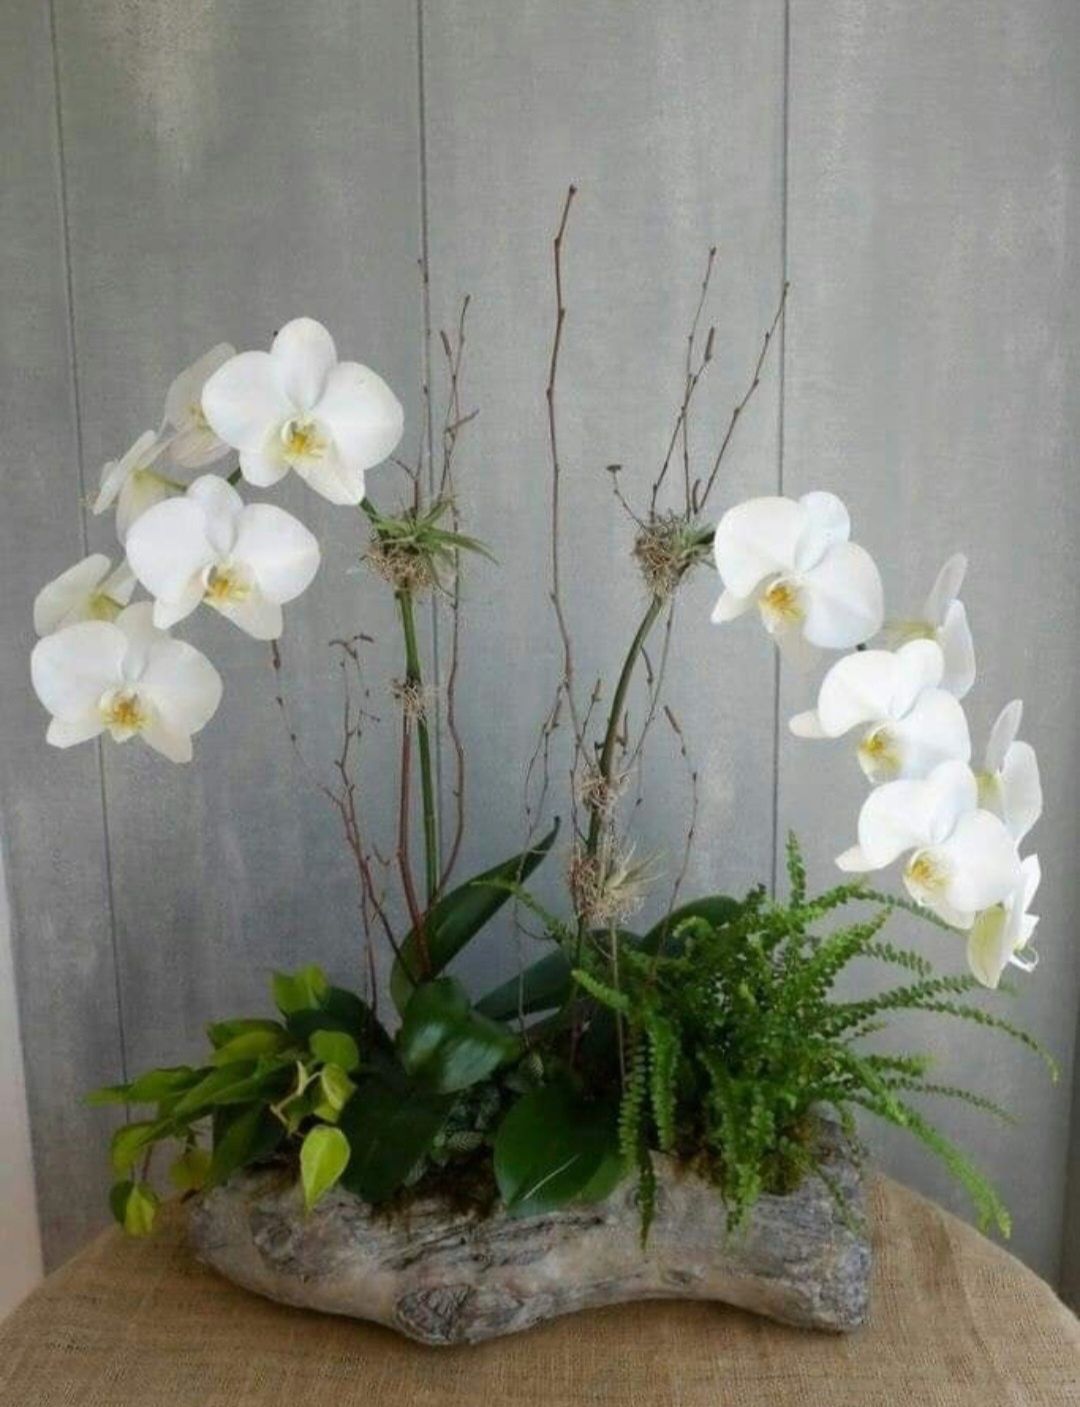 Aranajament floral cu orhidee și plante naturale și criogenate.